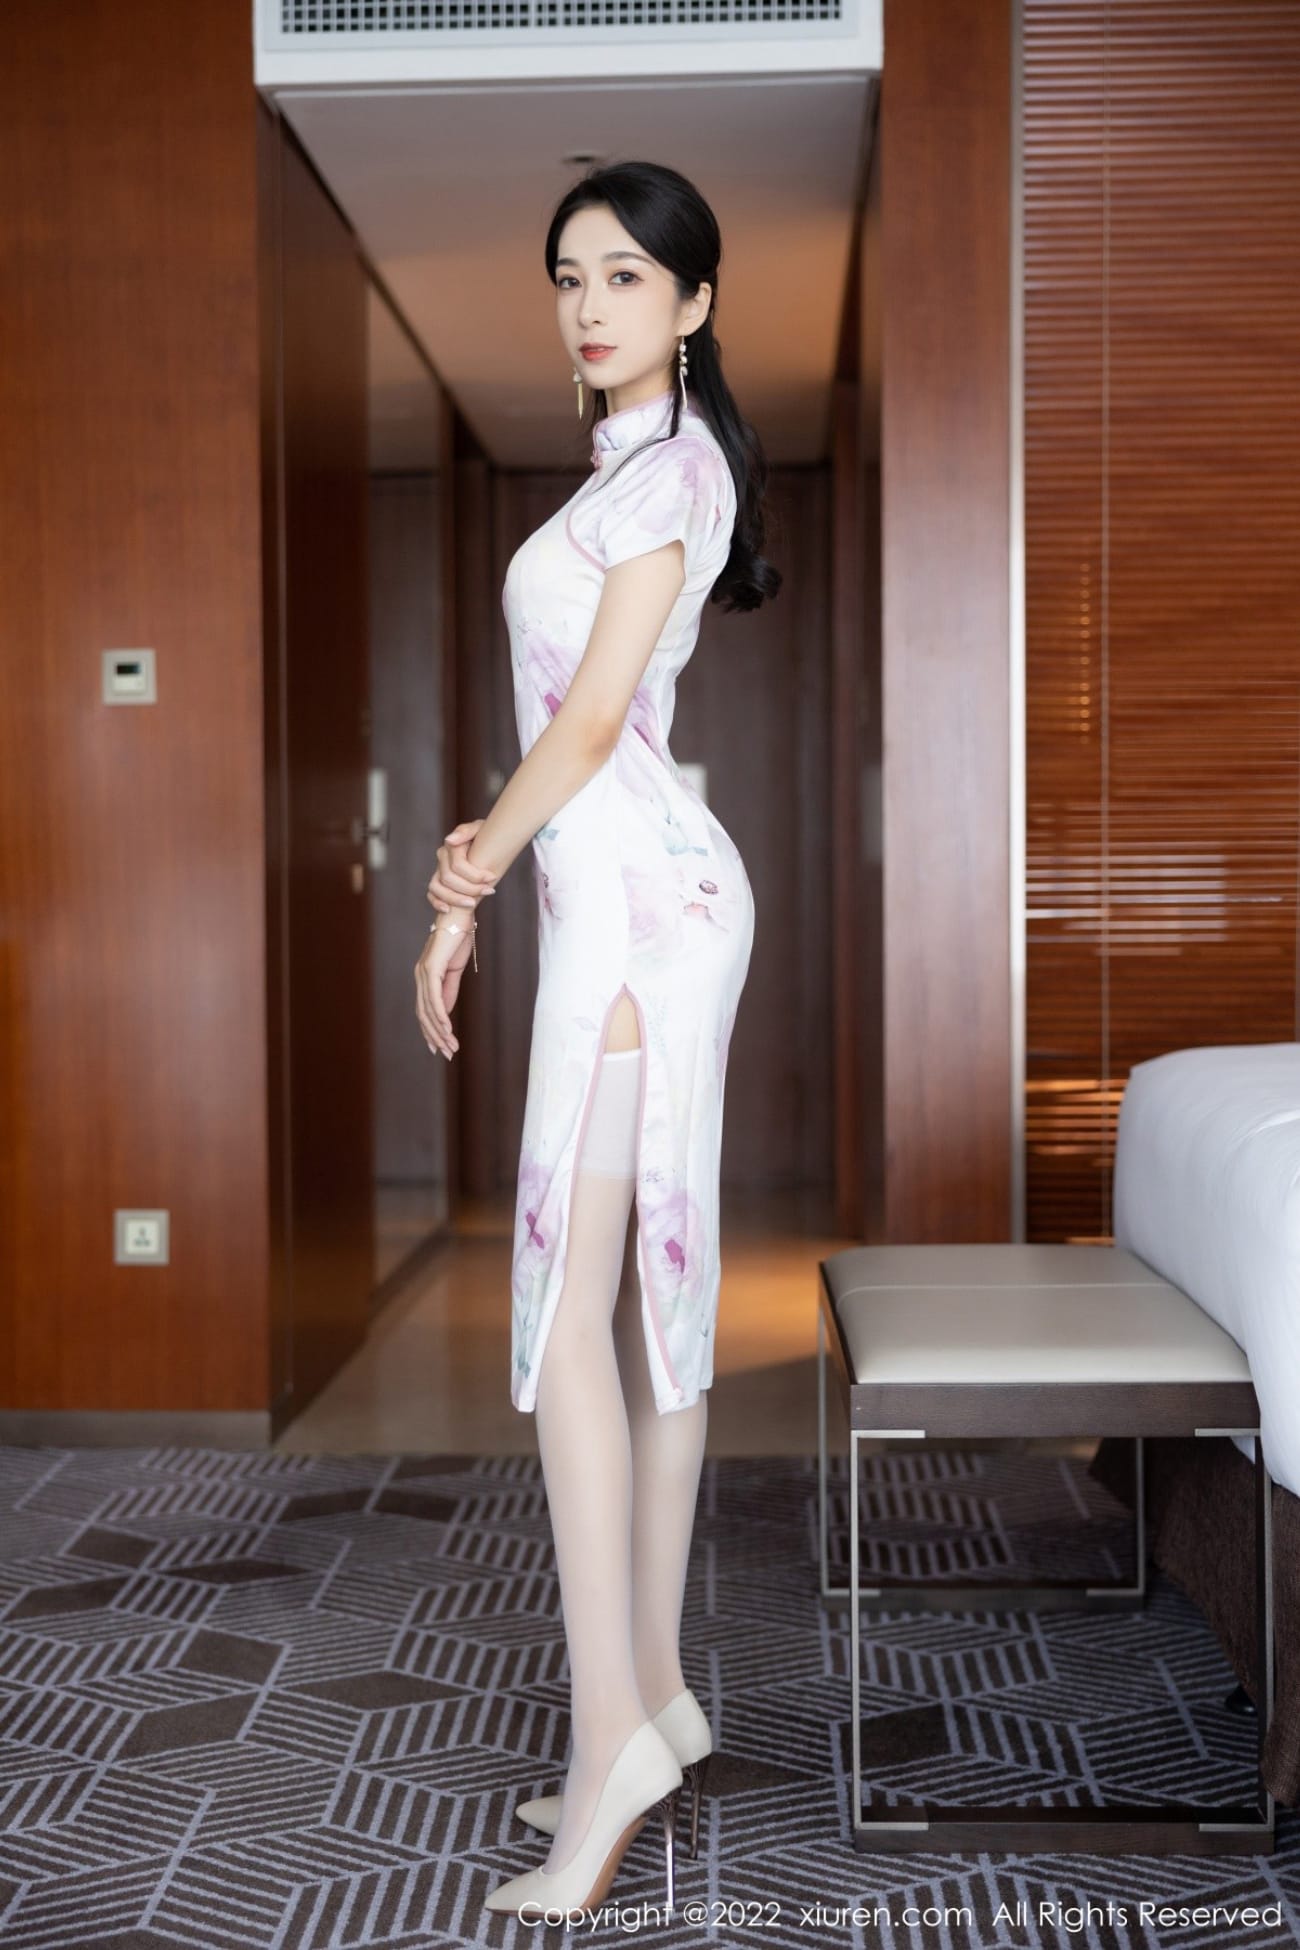 美女模特林乐一白色轻透旗袍搭配白色丝袜性感写真